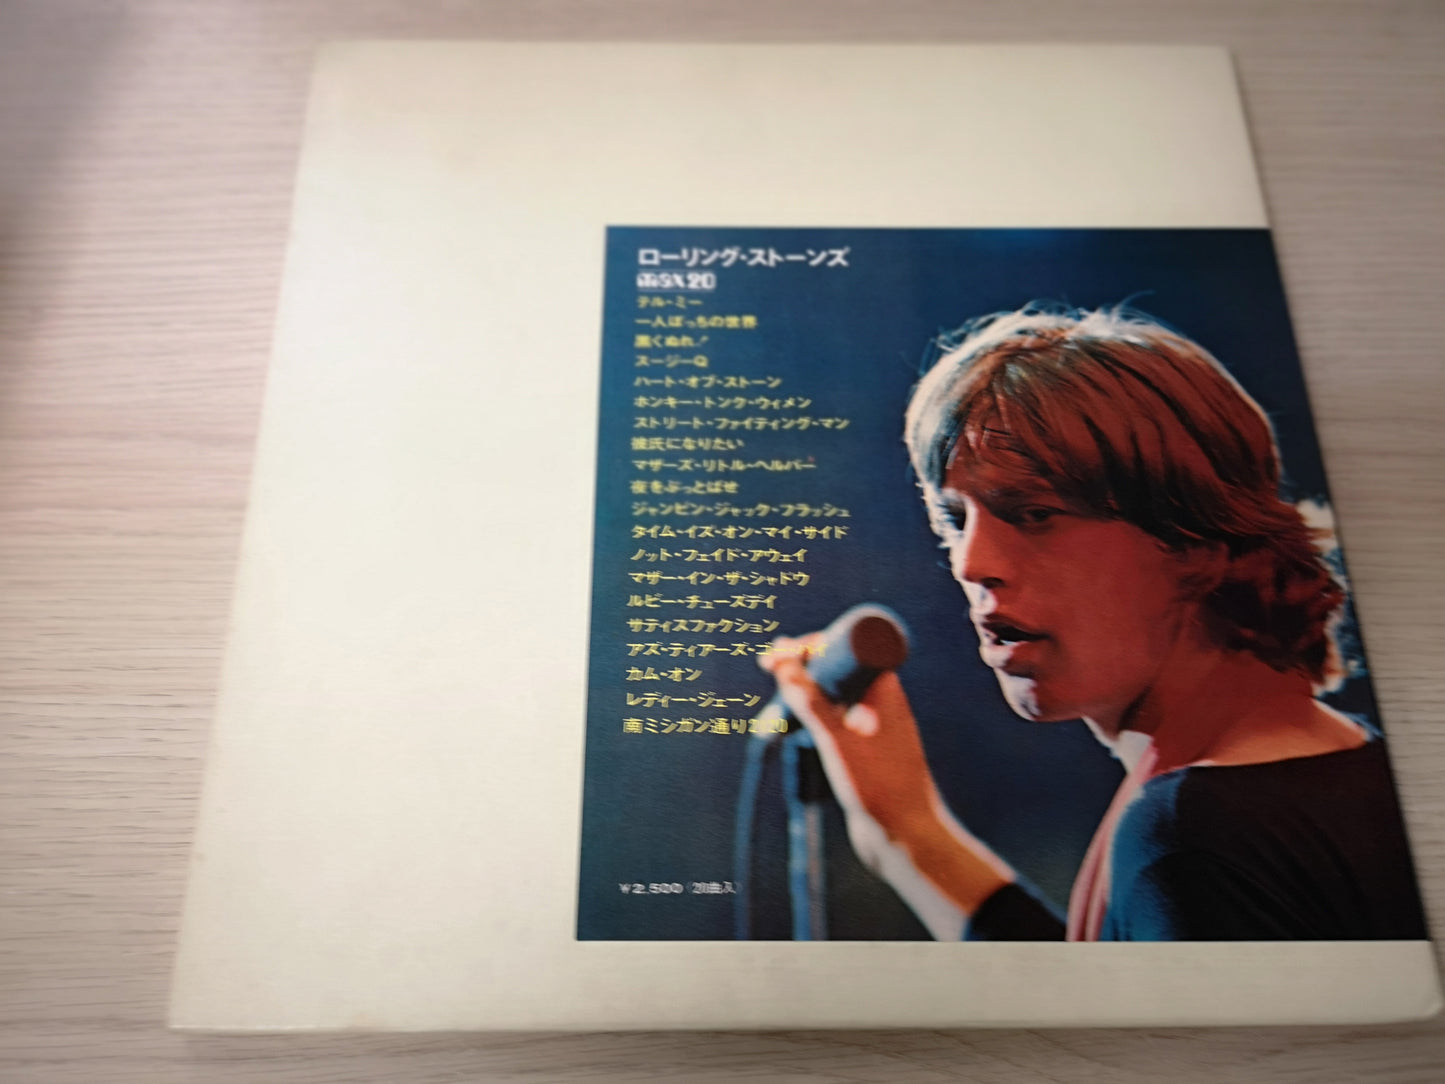 Rolling Stones "Max 20" Orig Japan 1971 EX/EX (Obi & Booklet)